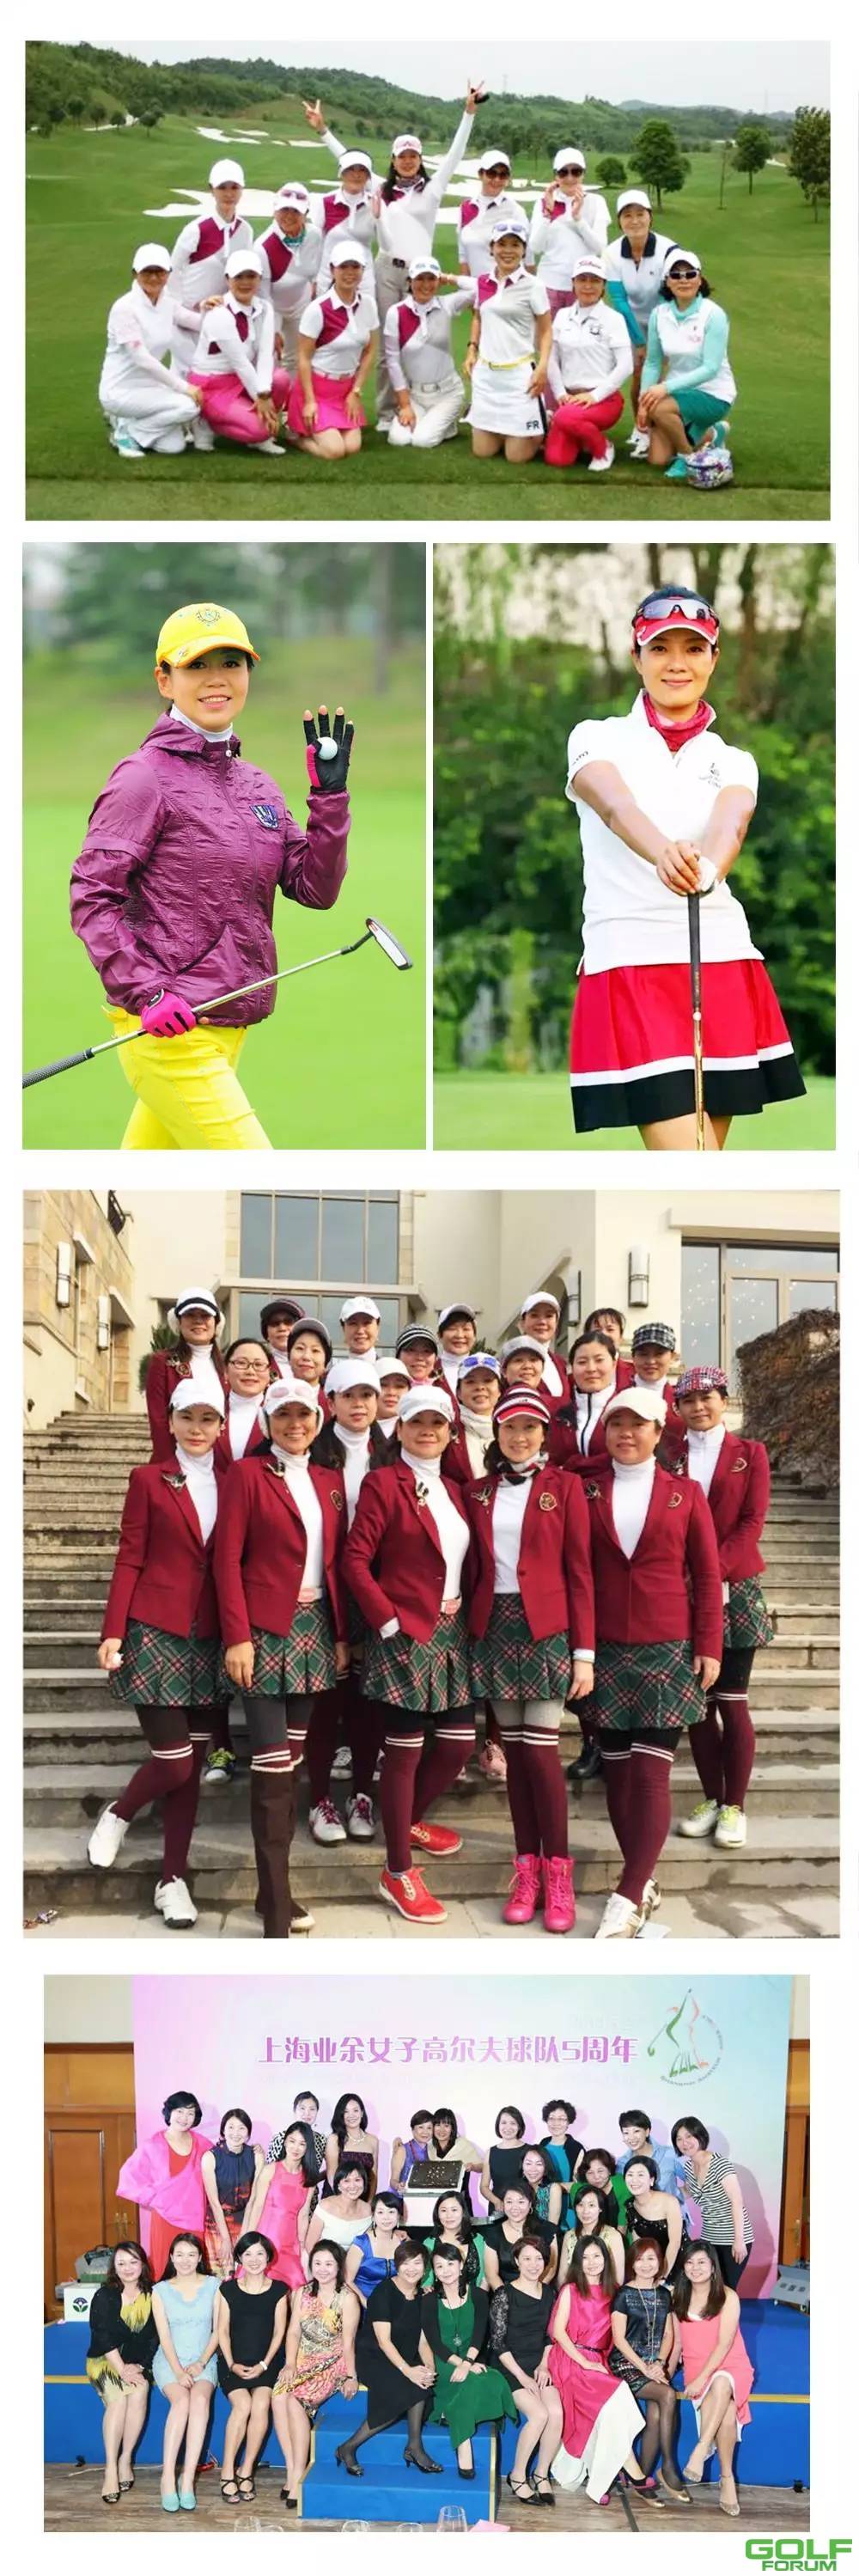 中国最美女子高尔夫球队评选快为你心中的美投上一票 ...